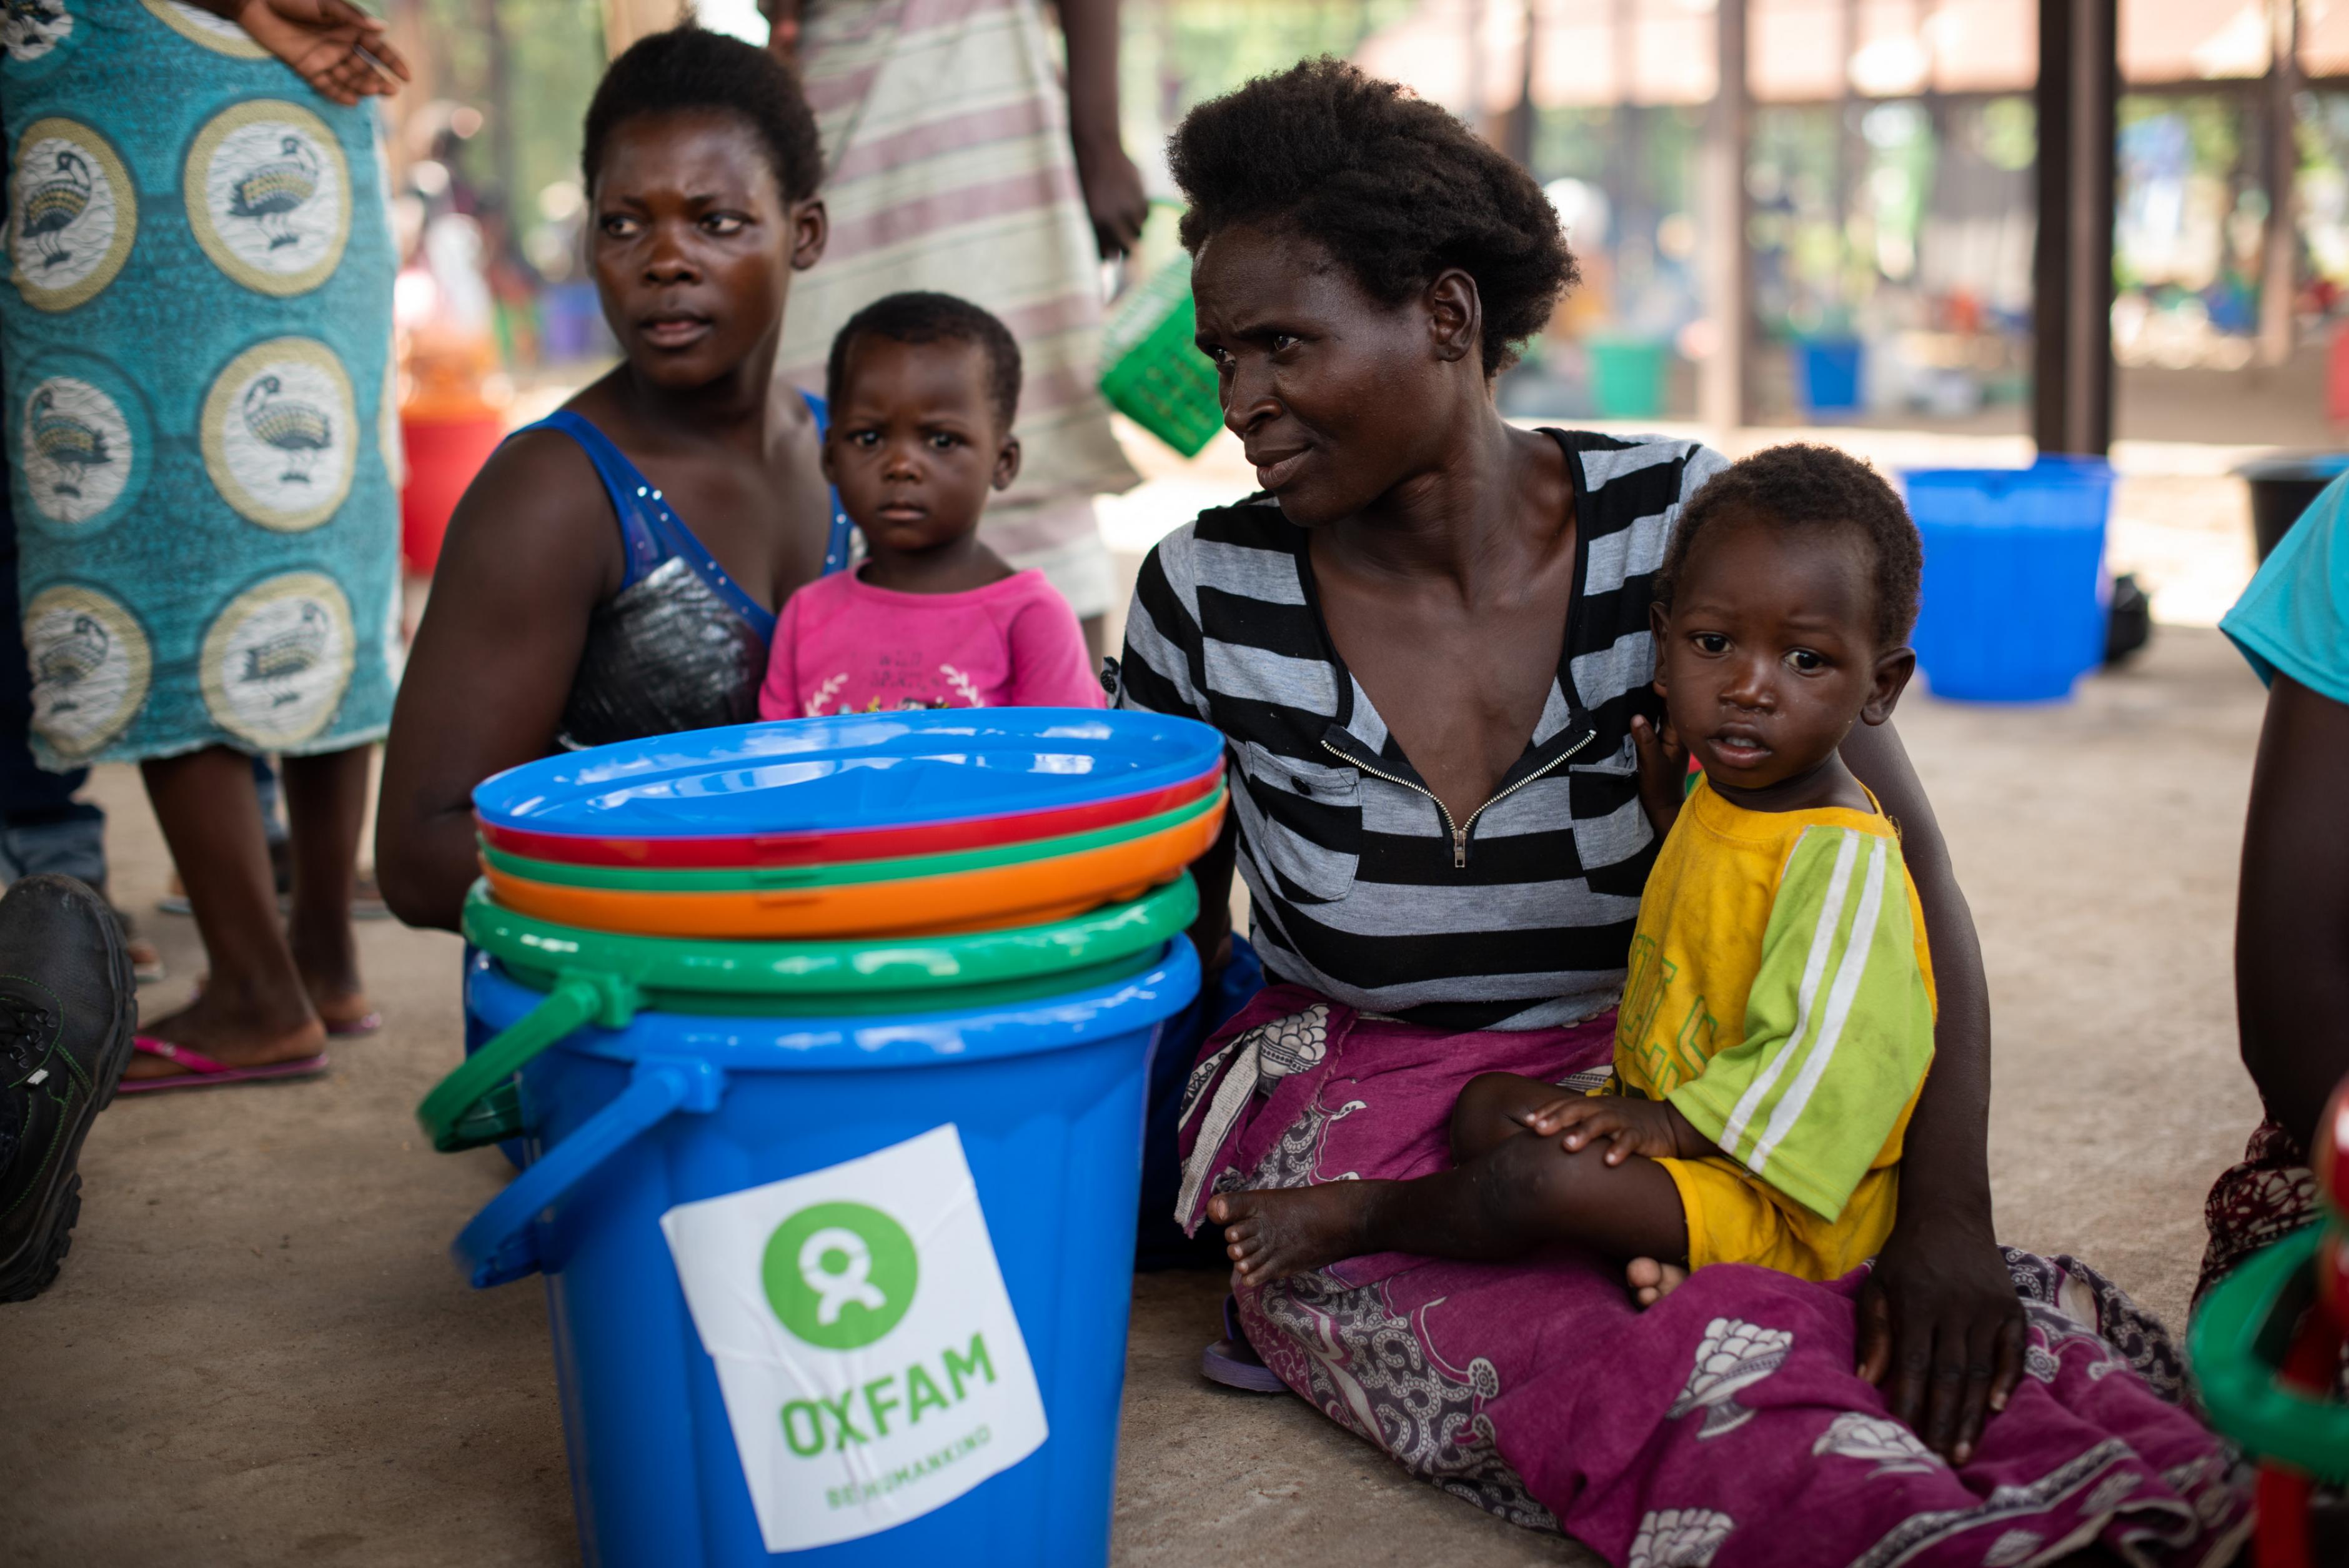 Zwei Frauen sitzen neben Oxfam-Eimern auf dem Boden, jeweils mit einem Kind im Schoß.